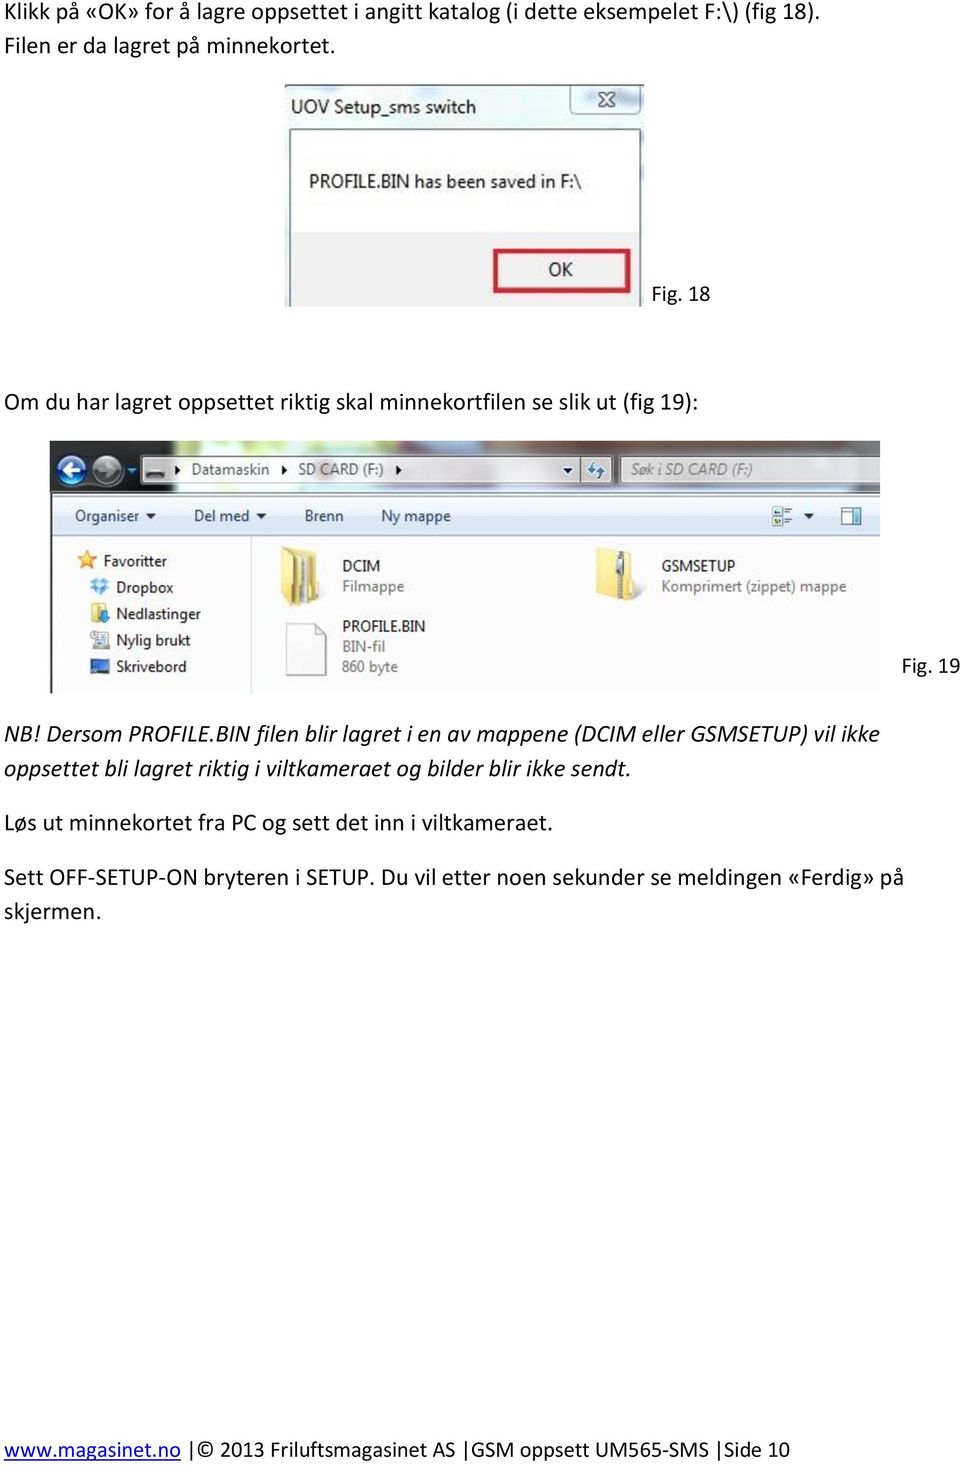 BIN filen blir lagret i en av mappene (DCIM eller GSMSETUP) vil ikke oppsettet bli lagret riktig i viltkameraet og bilder blir ikke sendt.